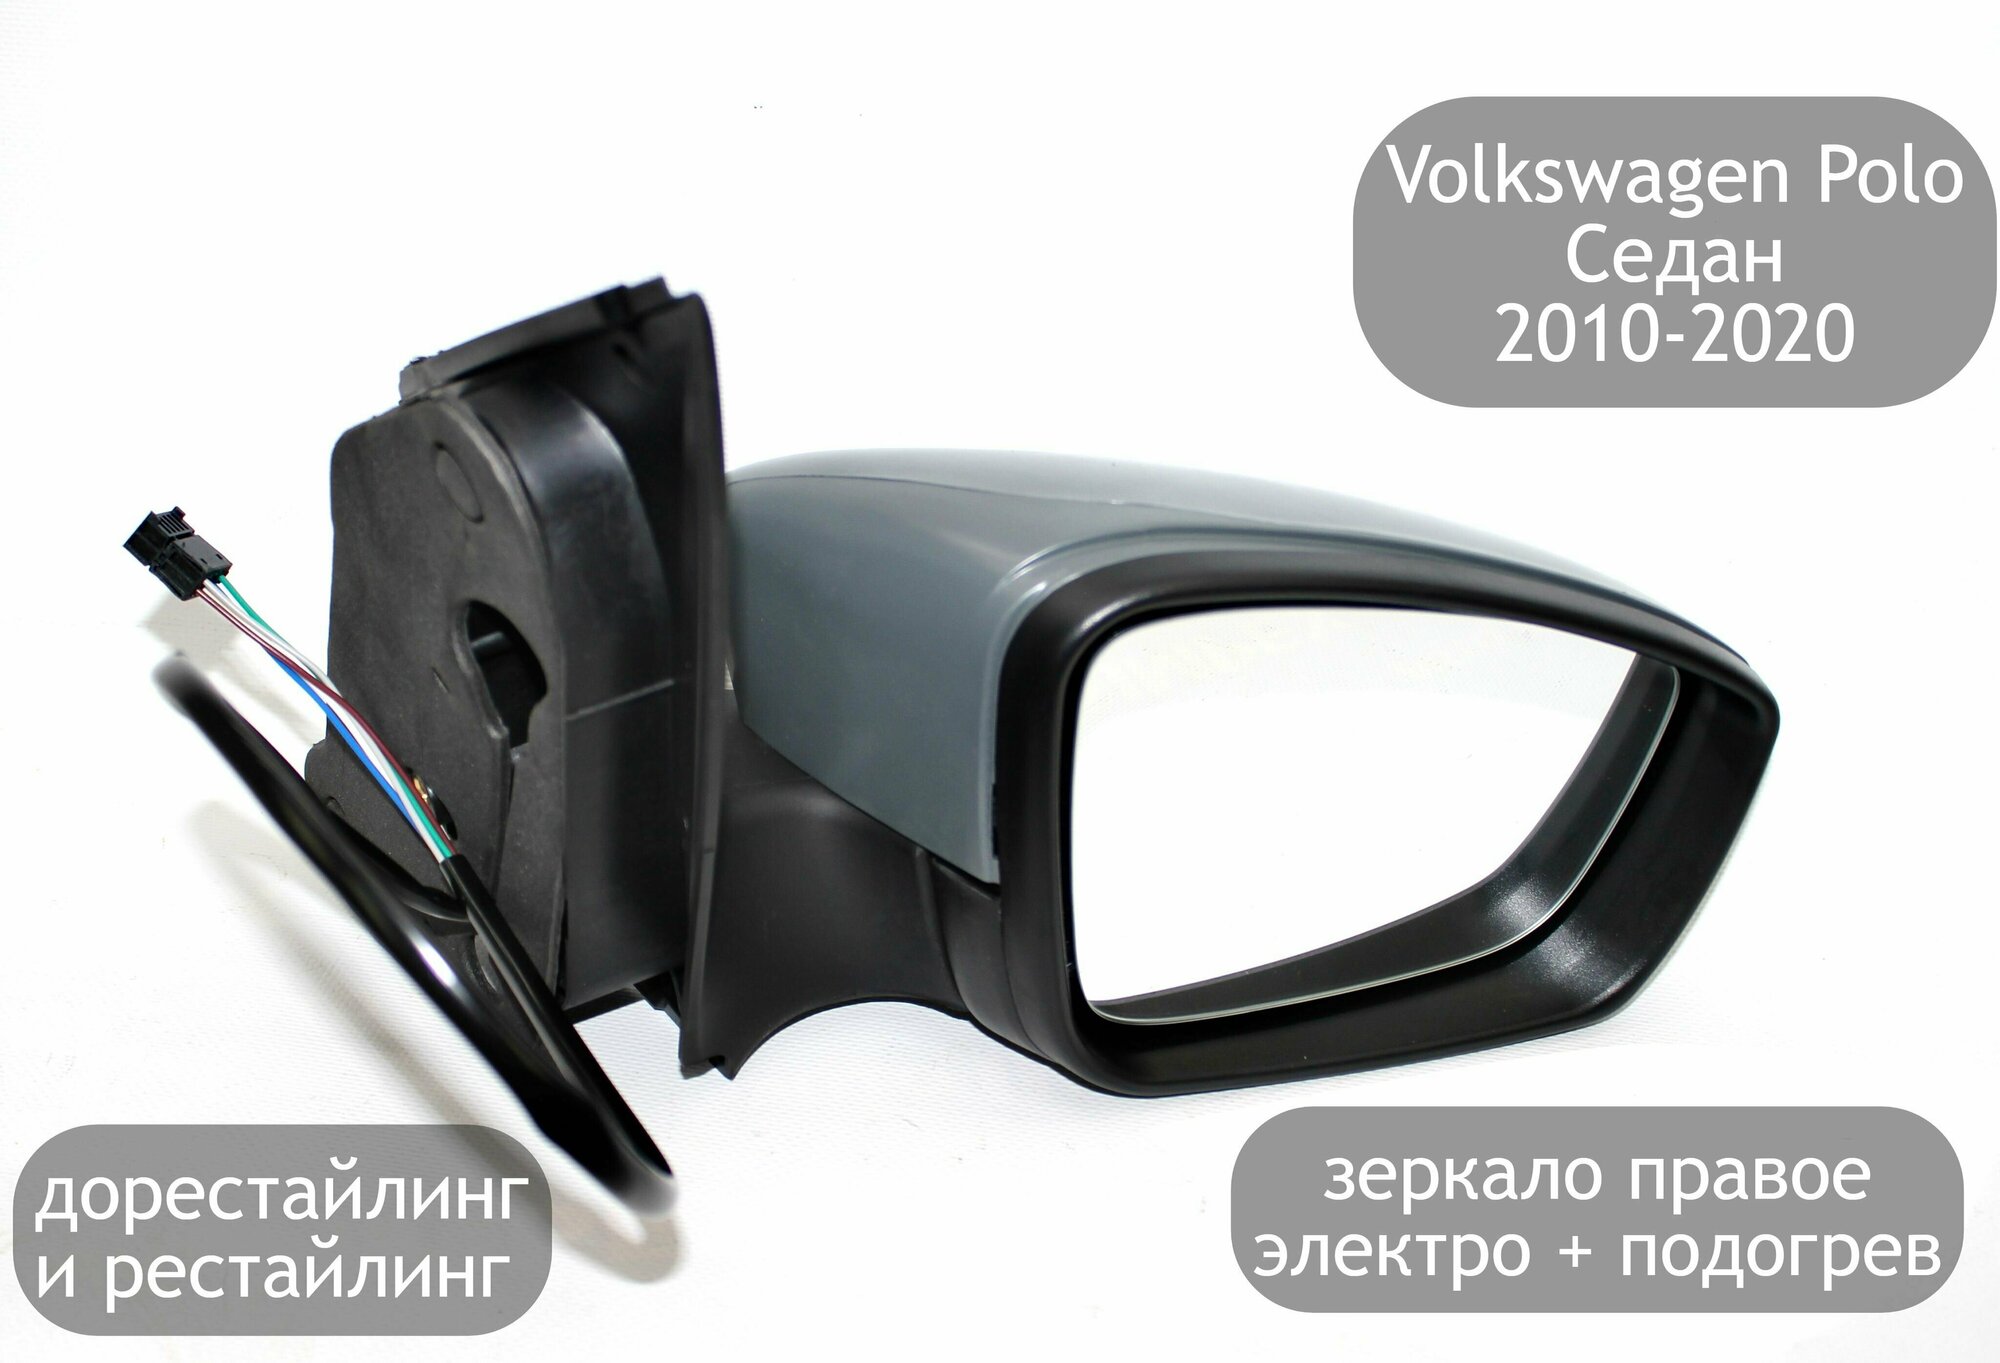 Зеркало электрическое правое для Volkswagen Polo Седан 2010-2020 (дорестайлинг и рестайлинг) с обогревом